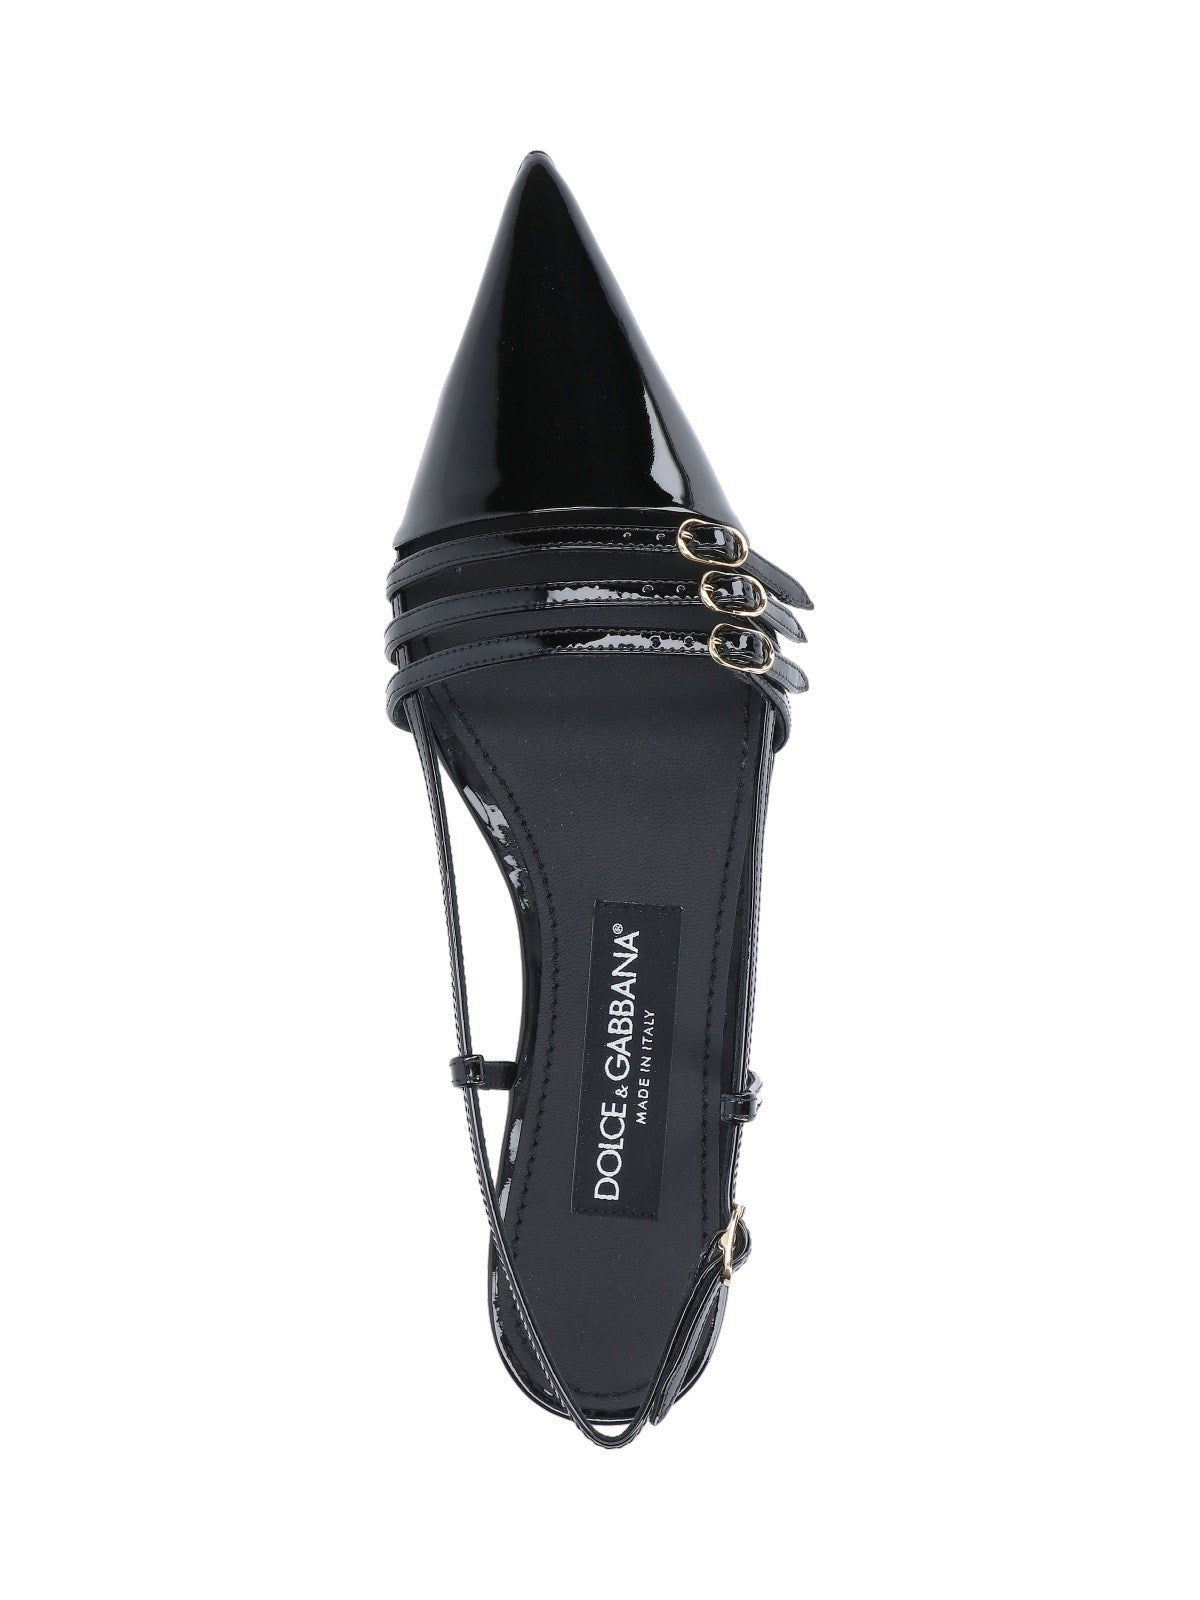 Dolce & Gabbana Slingback dettaglio cinturini-sandali bassi-Dolce & Gabbana-Slingback dettaglio cinturini Dolce & Gabbana, in pelle verniciata nera, a punta, dettaglio cinturini regolabili superiori e retro, suola in cuoio.-Dresso